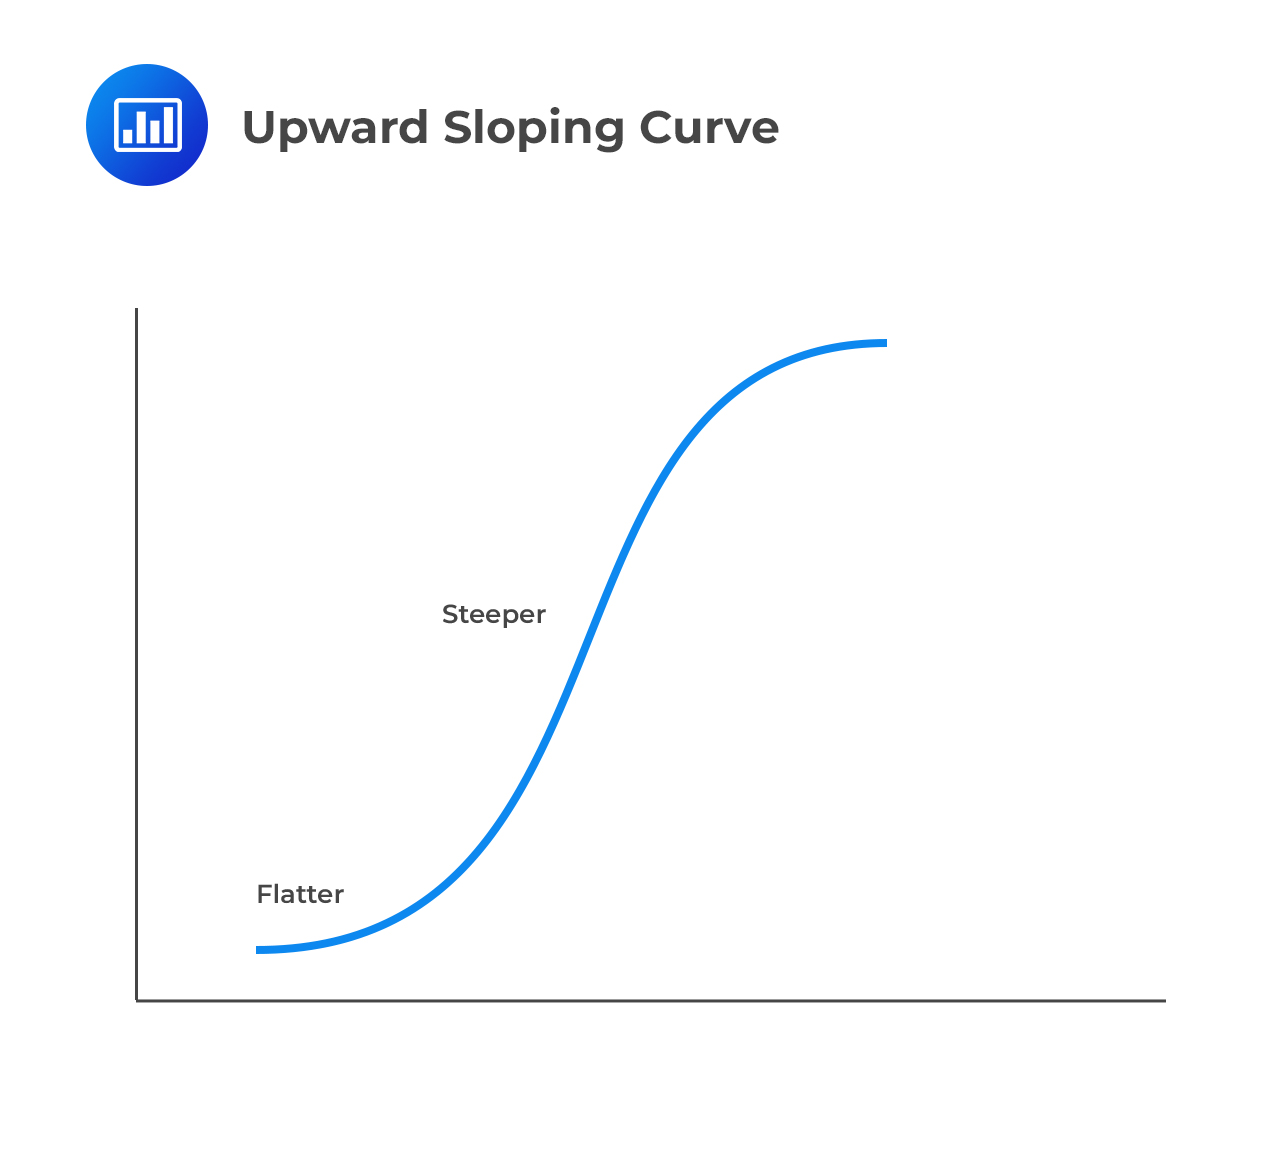 Upward Sloping Curve